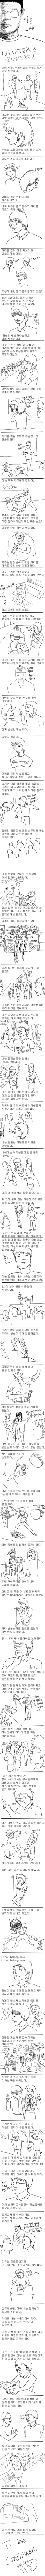 카연갤) 억울 Lee - 3부 고등학생의 못생김 -.jpg